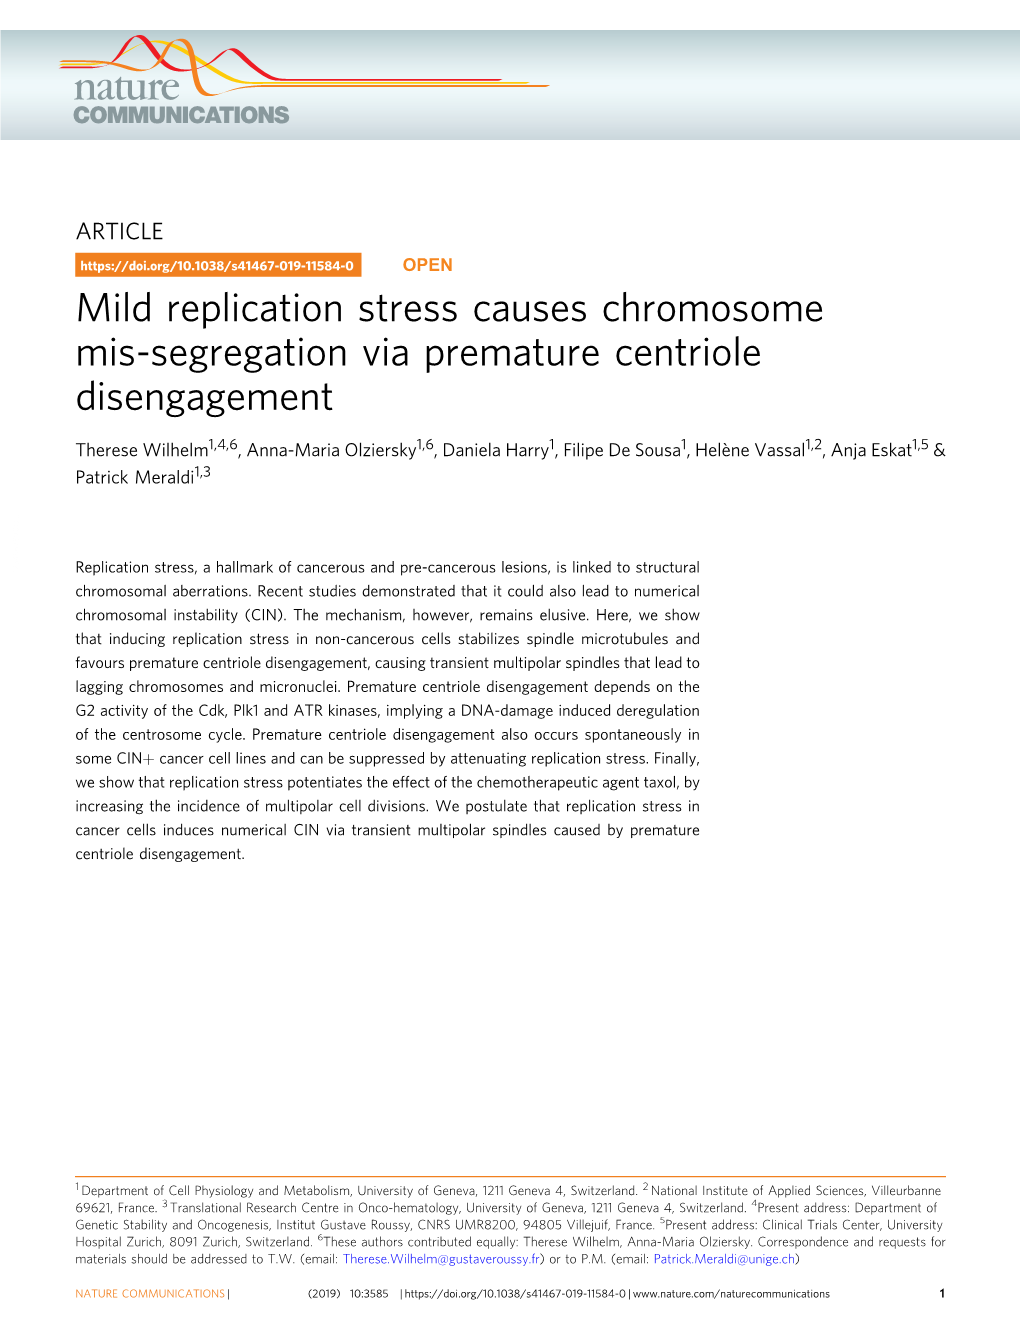 Mild Replication Stress Causes Chromosome Mis-Segregation Via Premature Centriole Disengagement